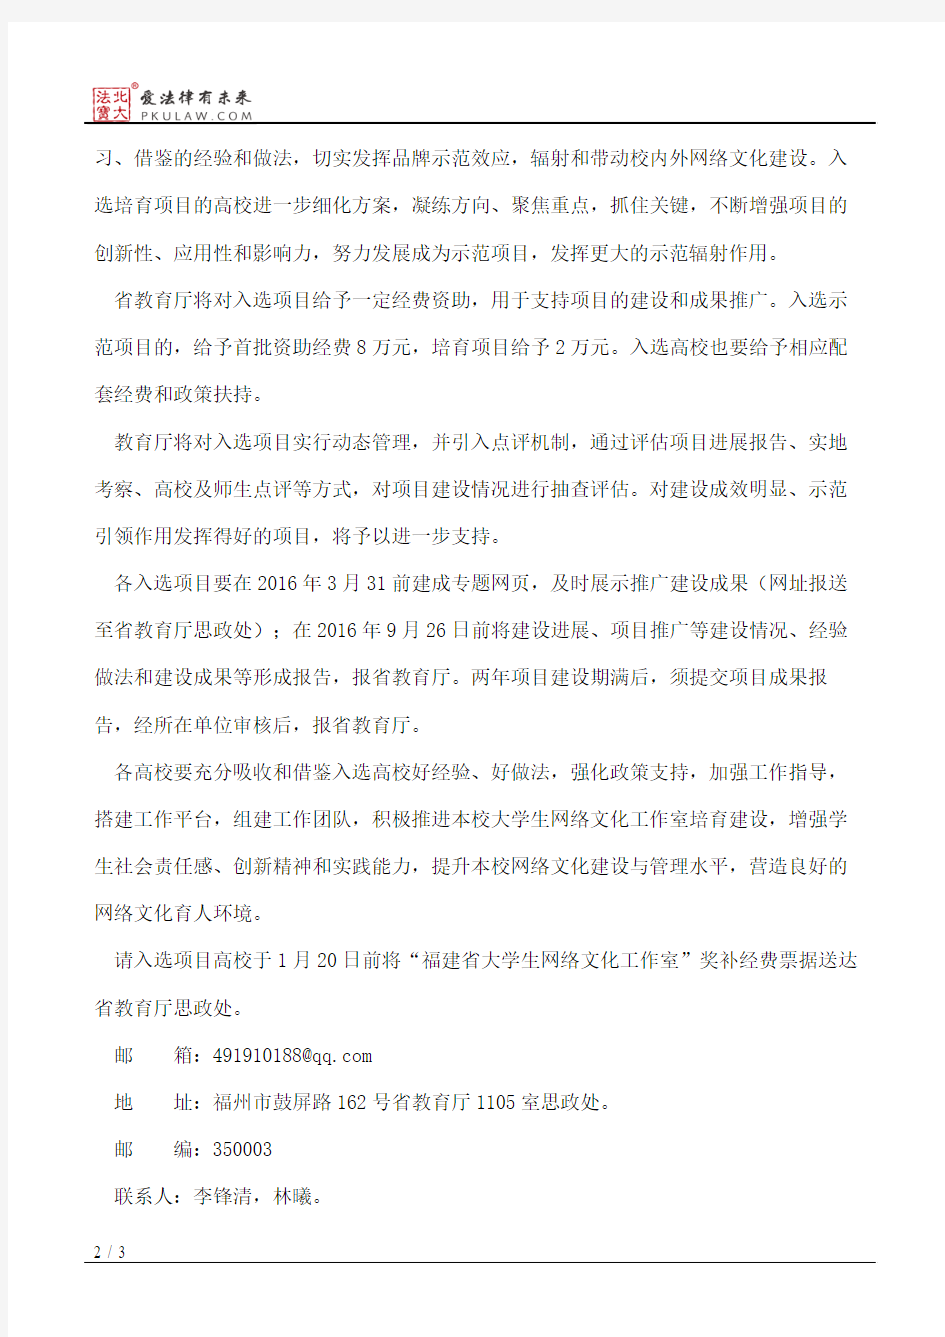 福建省教育厅关于公布首批“福建省大学生网络文化工作室”的通知